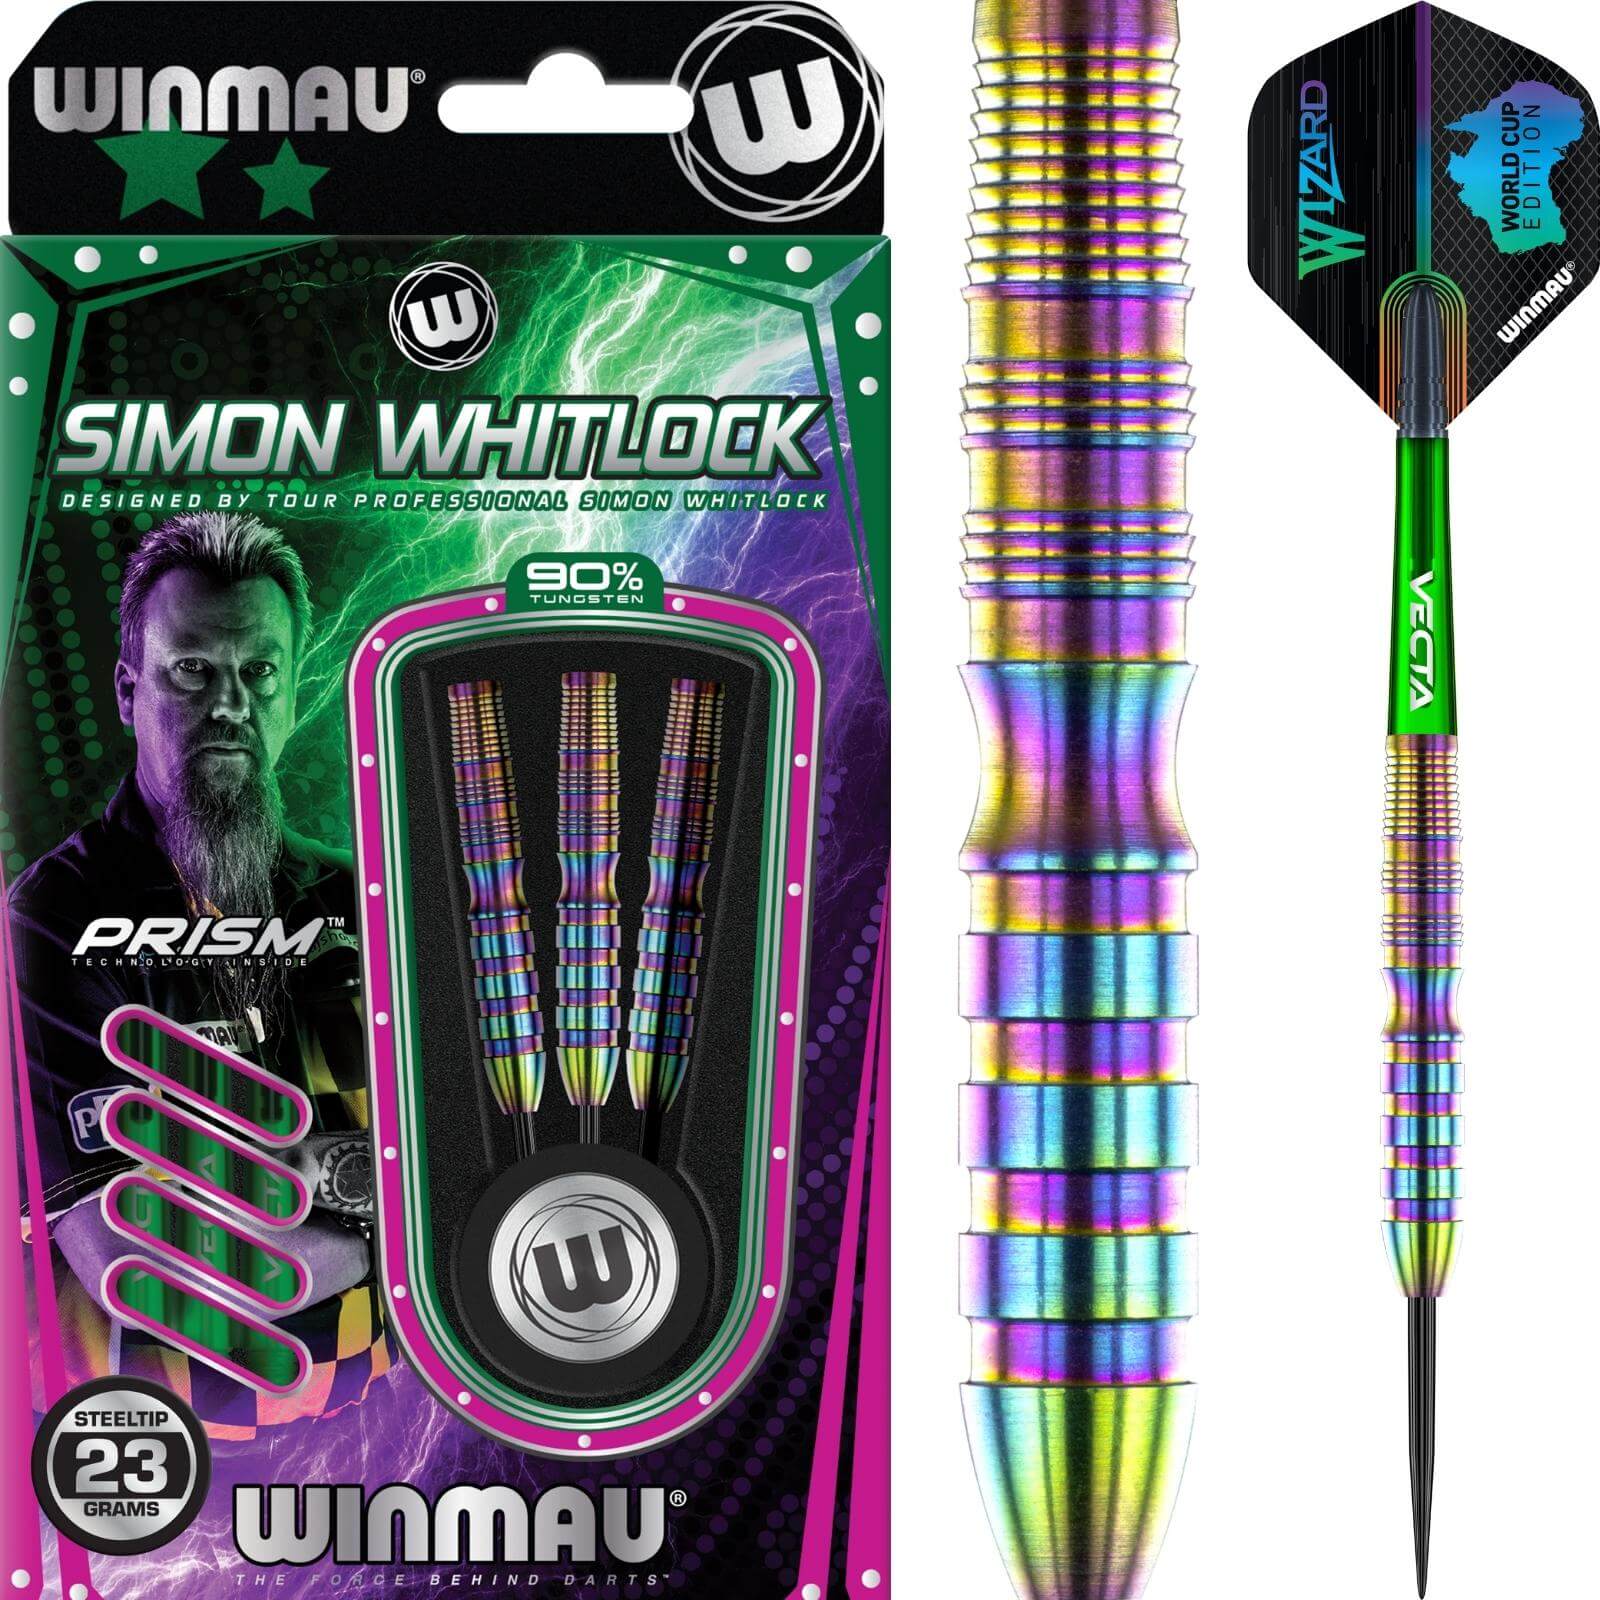 Darts - Winmau - Simon Whitlock World Cup Darts - Steel Tip - 90% Tungsten - 22g 23g 24g 